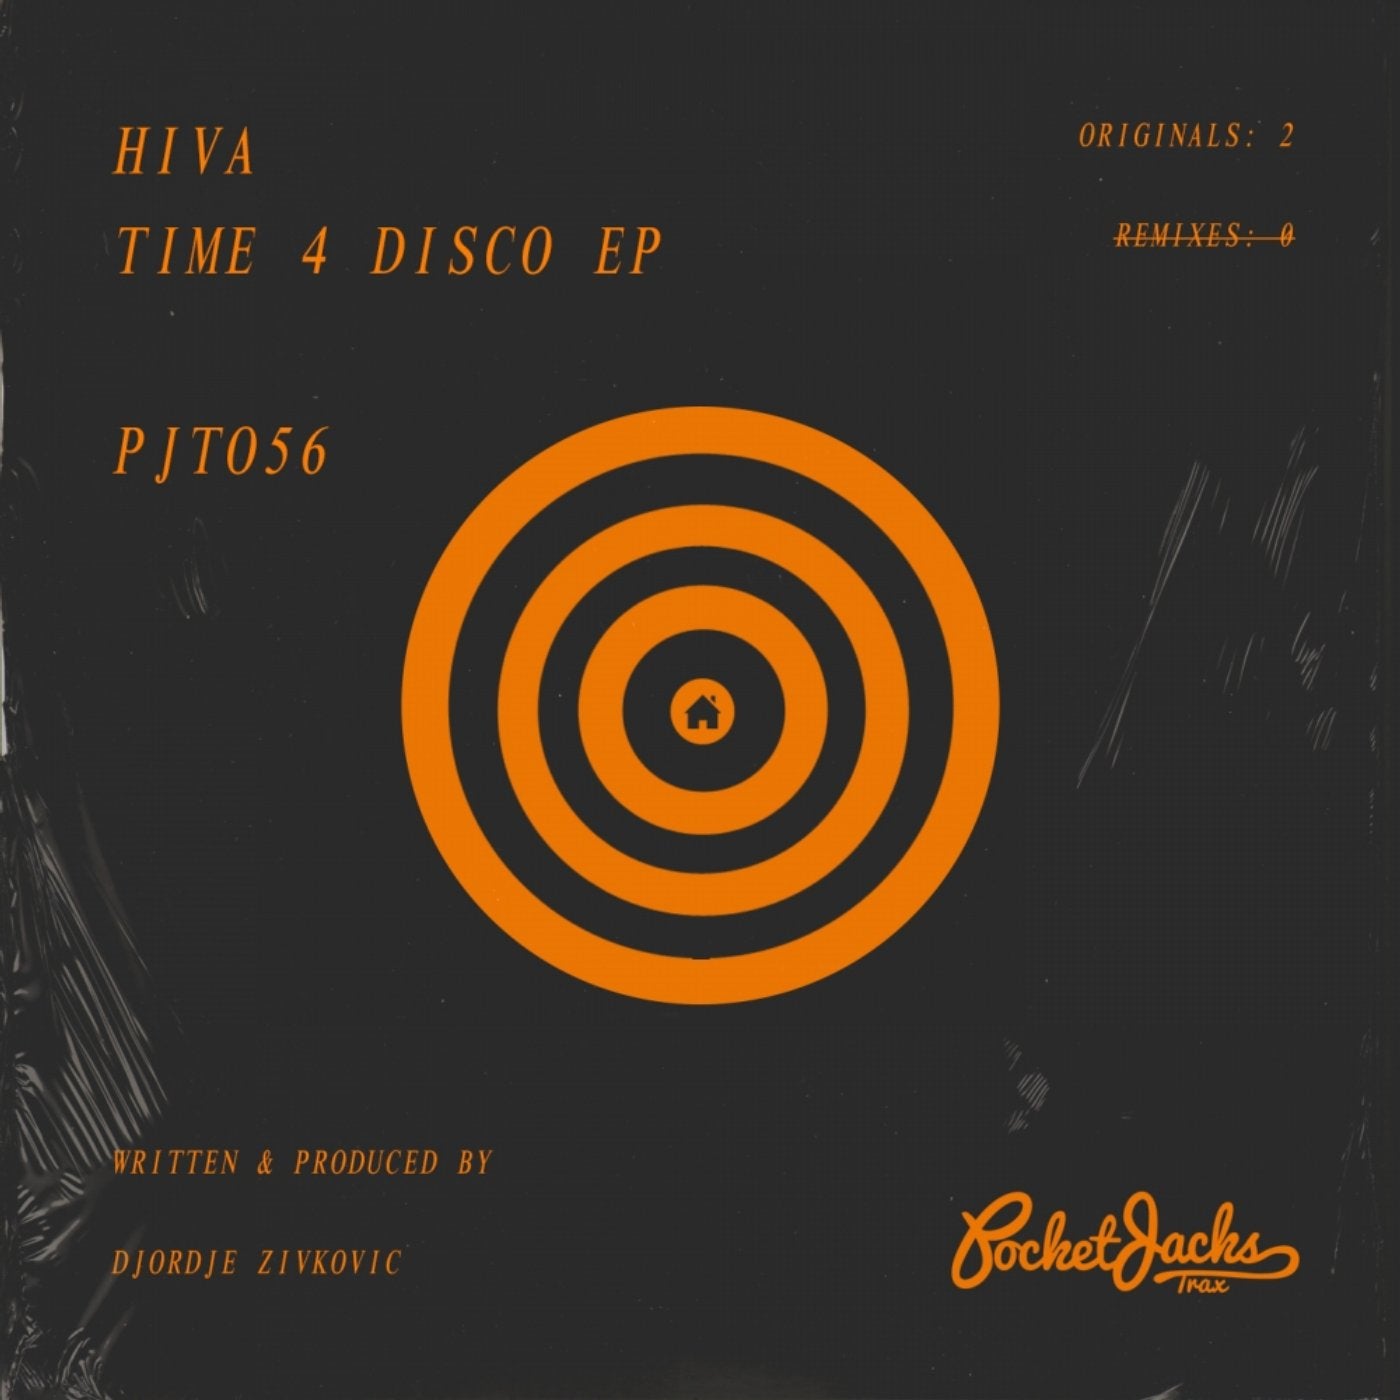 Time 4 Disco EP